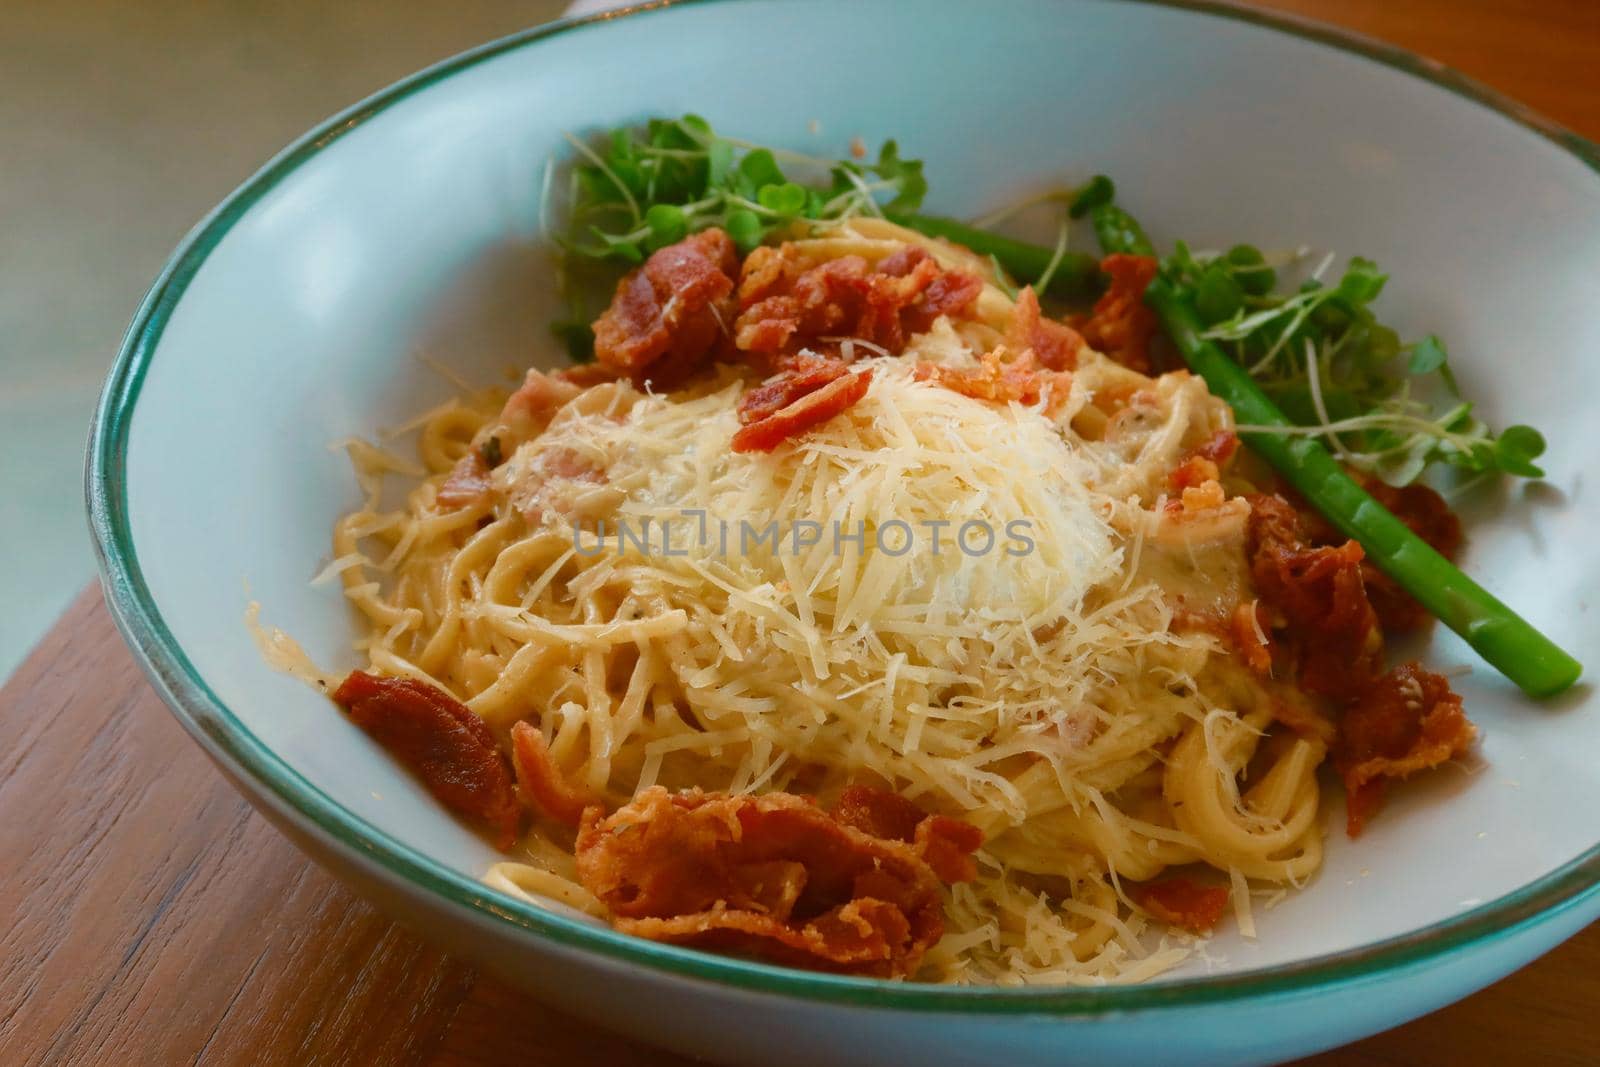 spaghetti carbonara with crispy bacon by baworn47